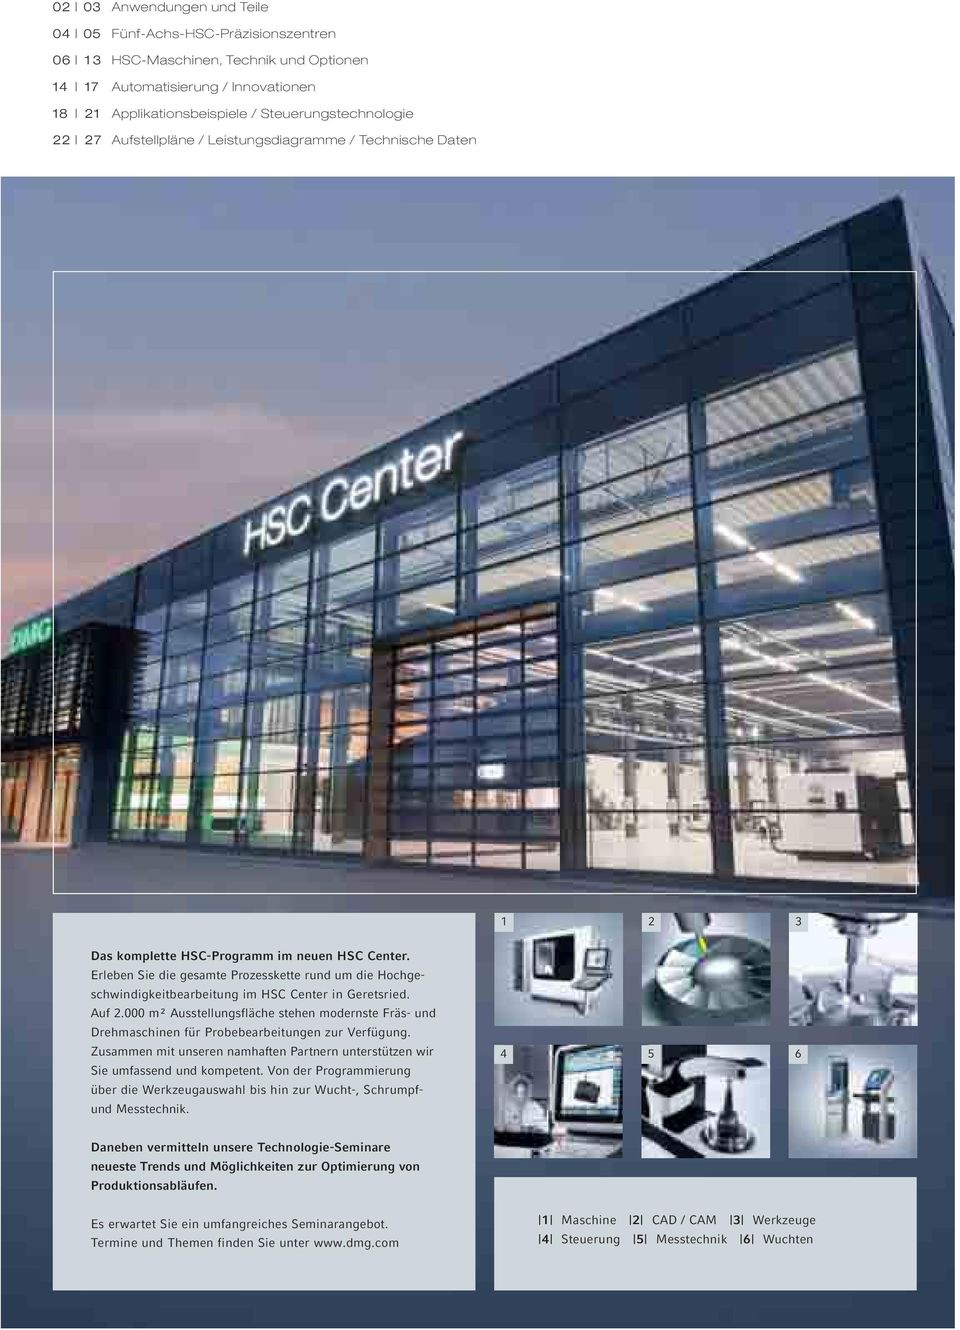 Erleben Sie die gesamte Prozesskette rund um die Hochgeschwindigkeitbearbeitung im HSC Center in Geretsried. Auf 2.